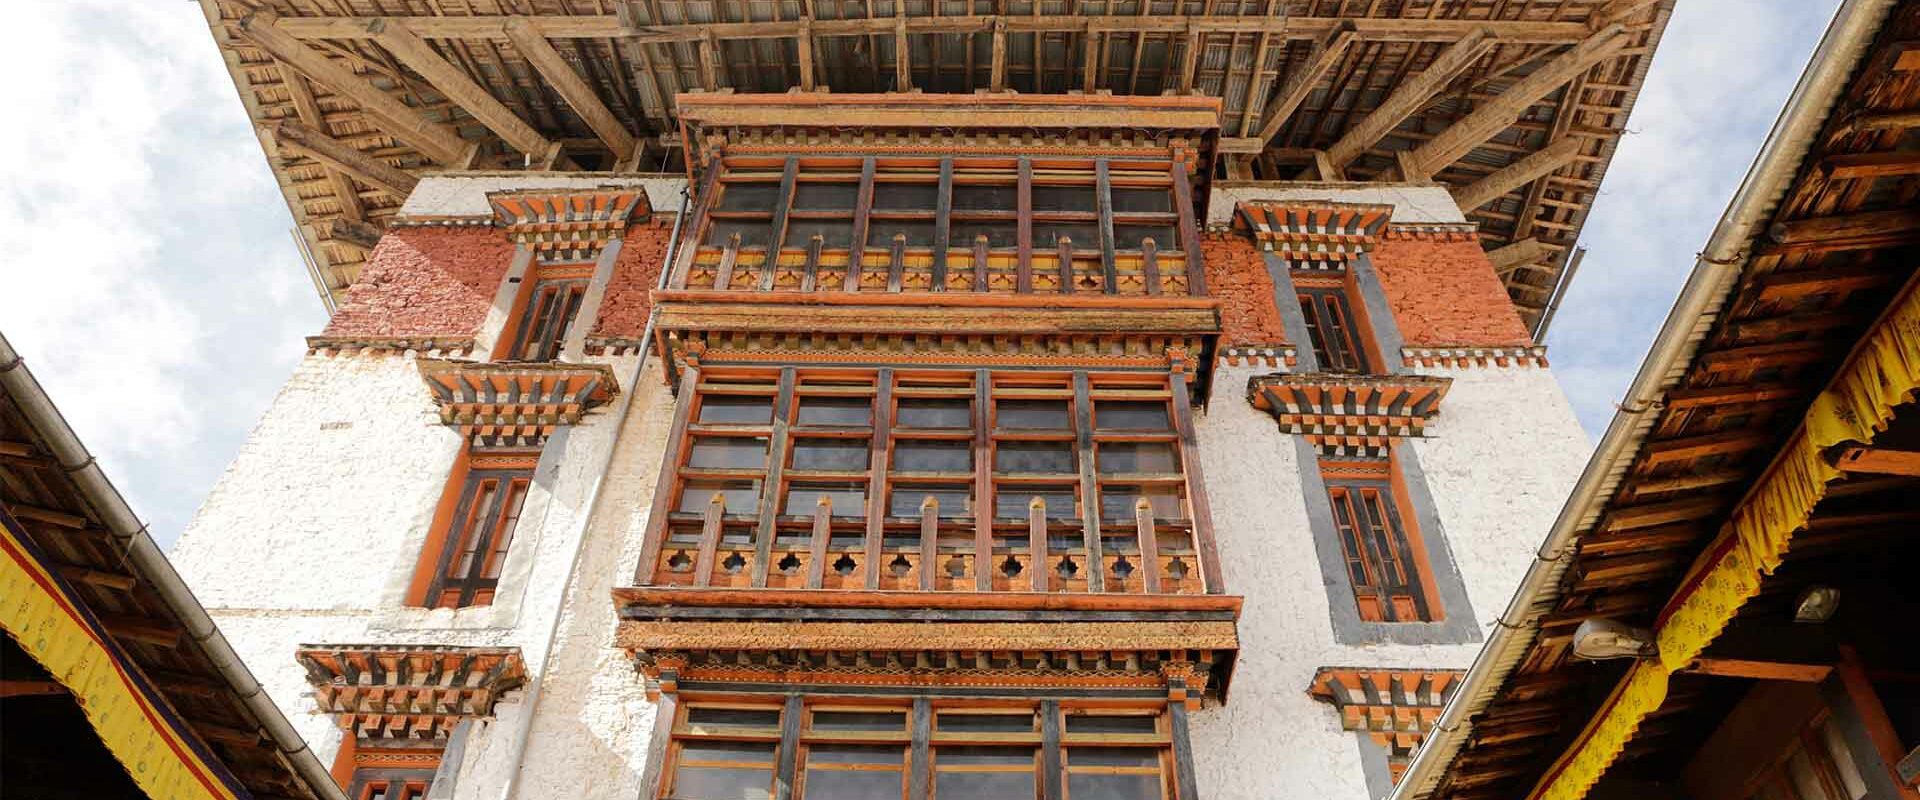 Experience Bhutan's unique culture through our Bhutan Cultural tour packages